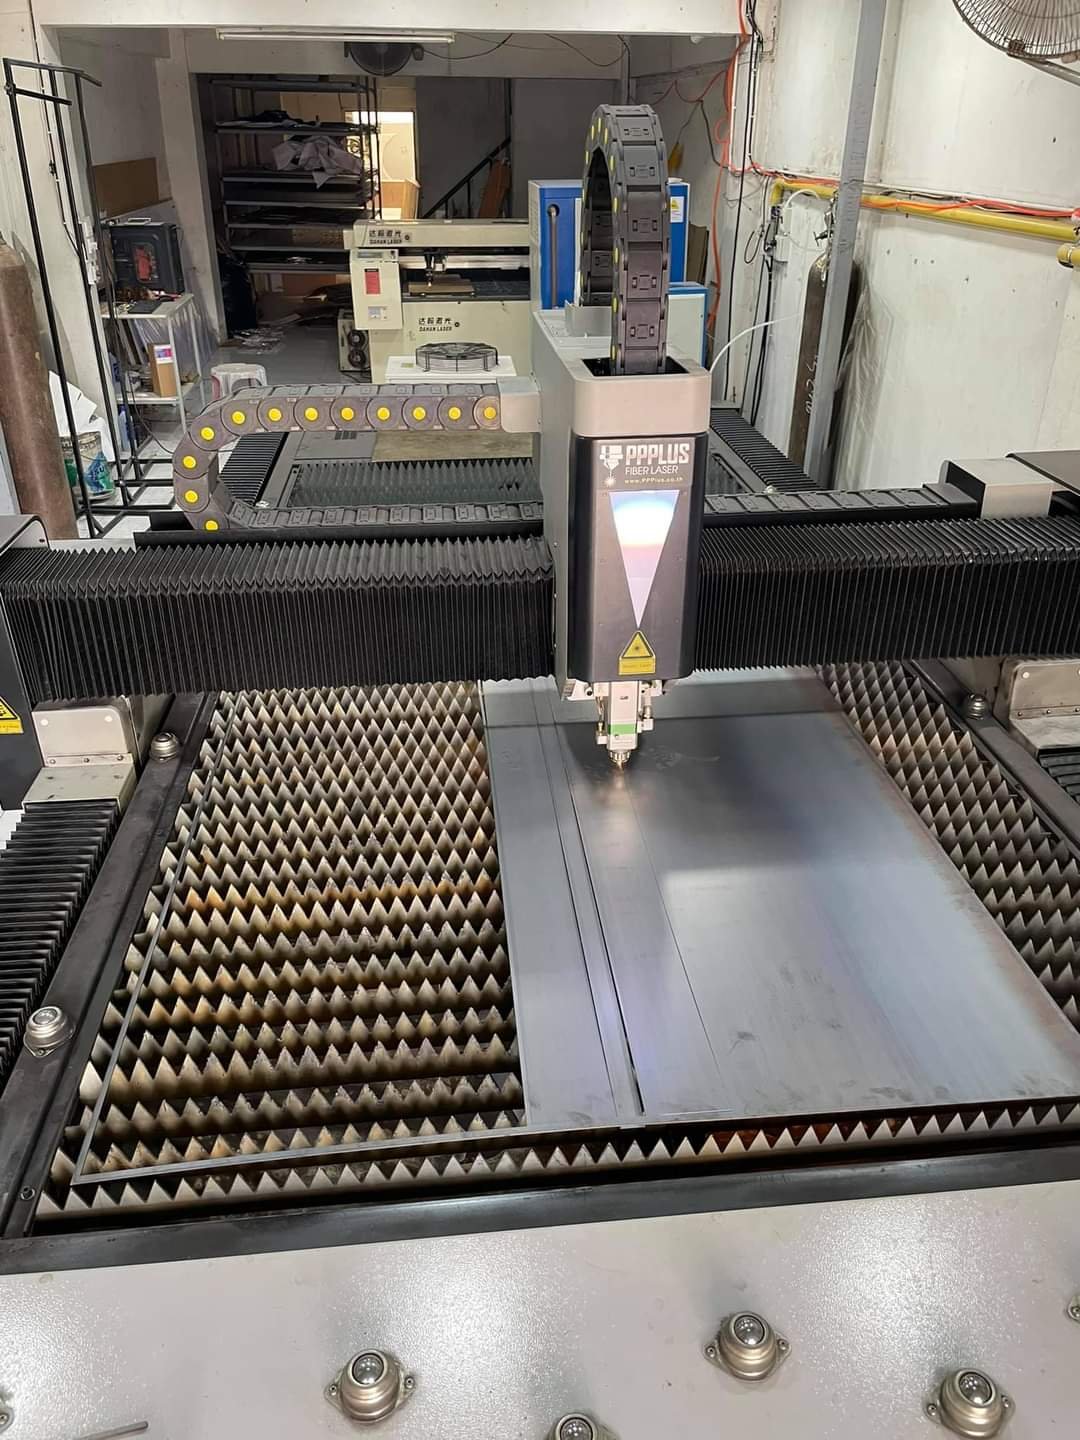 ส่งมอบเครื่อง welding Fiber Laser 1000w จำนวน 1 เครื่อง พิกัด บริษัท ฟาสท์ เพาเวอร์ จำกัด